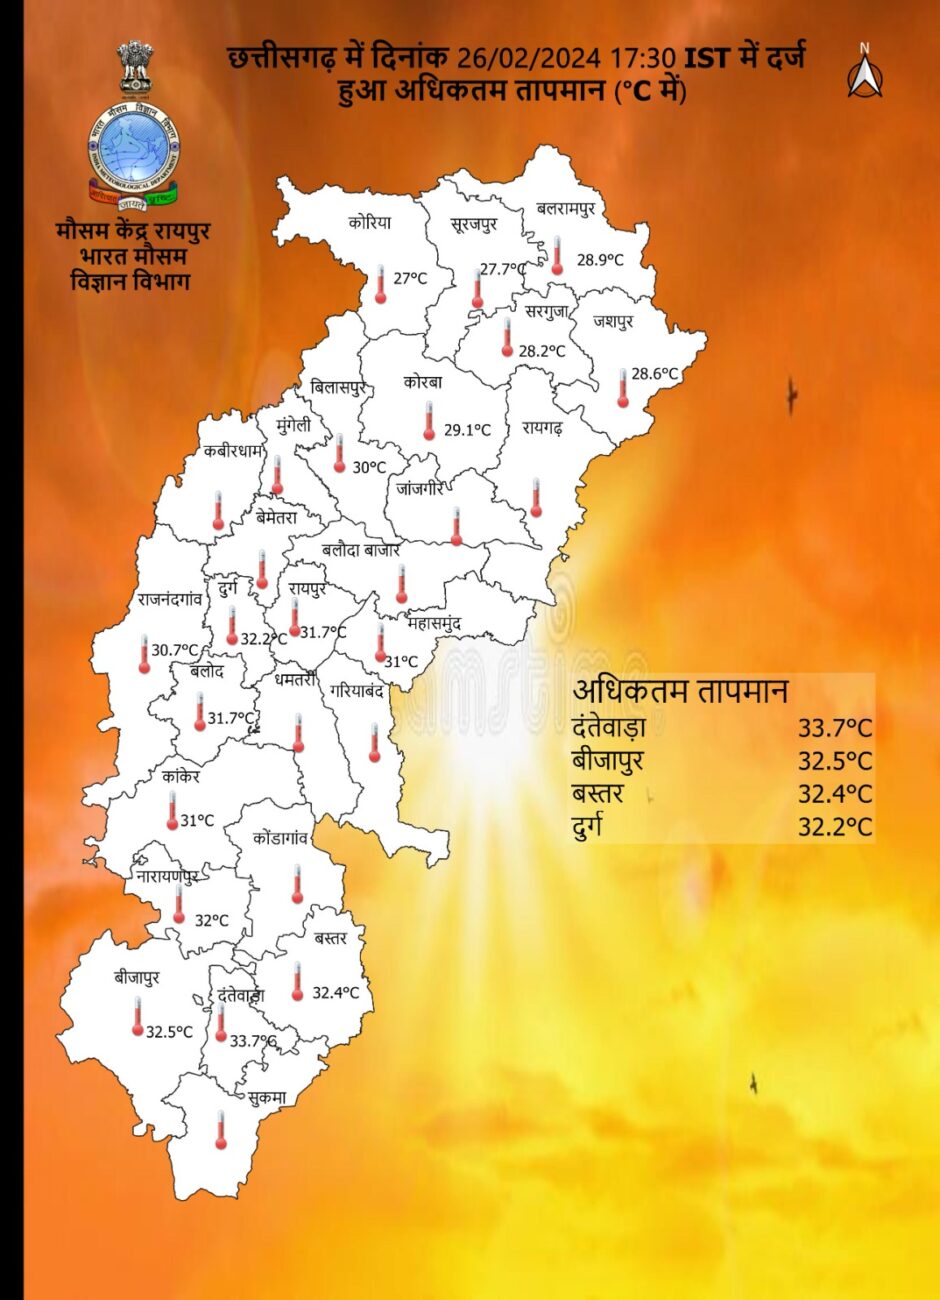 Chhattisgarh Weather : मार्च से फिर करवट लेगा मौसम, आज भी कई जिलों बारिश की चेतावनी, बिजली-तेज हवा, जानें IMD का पूर्वानुमान